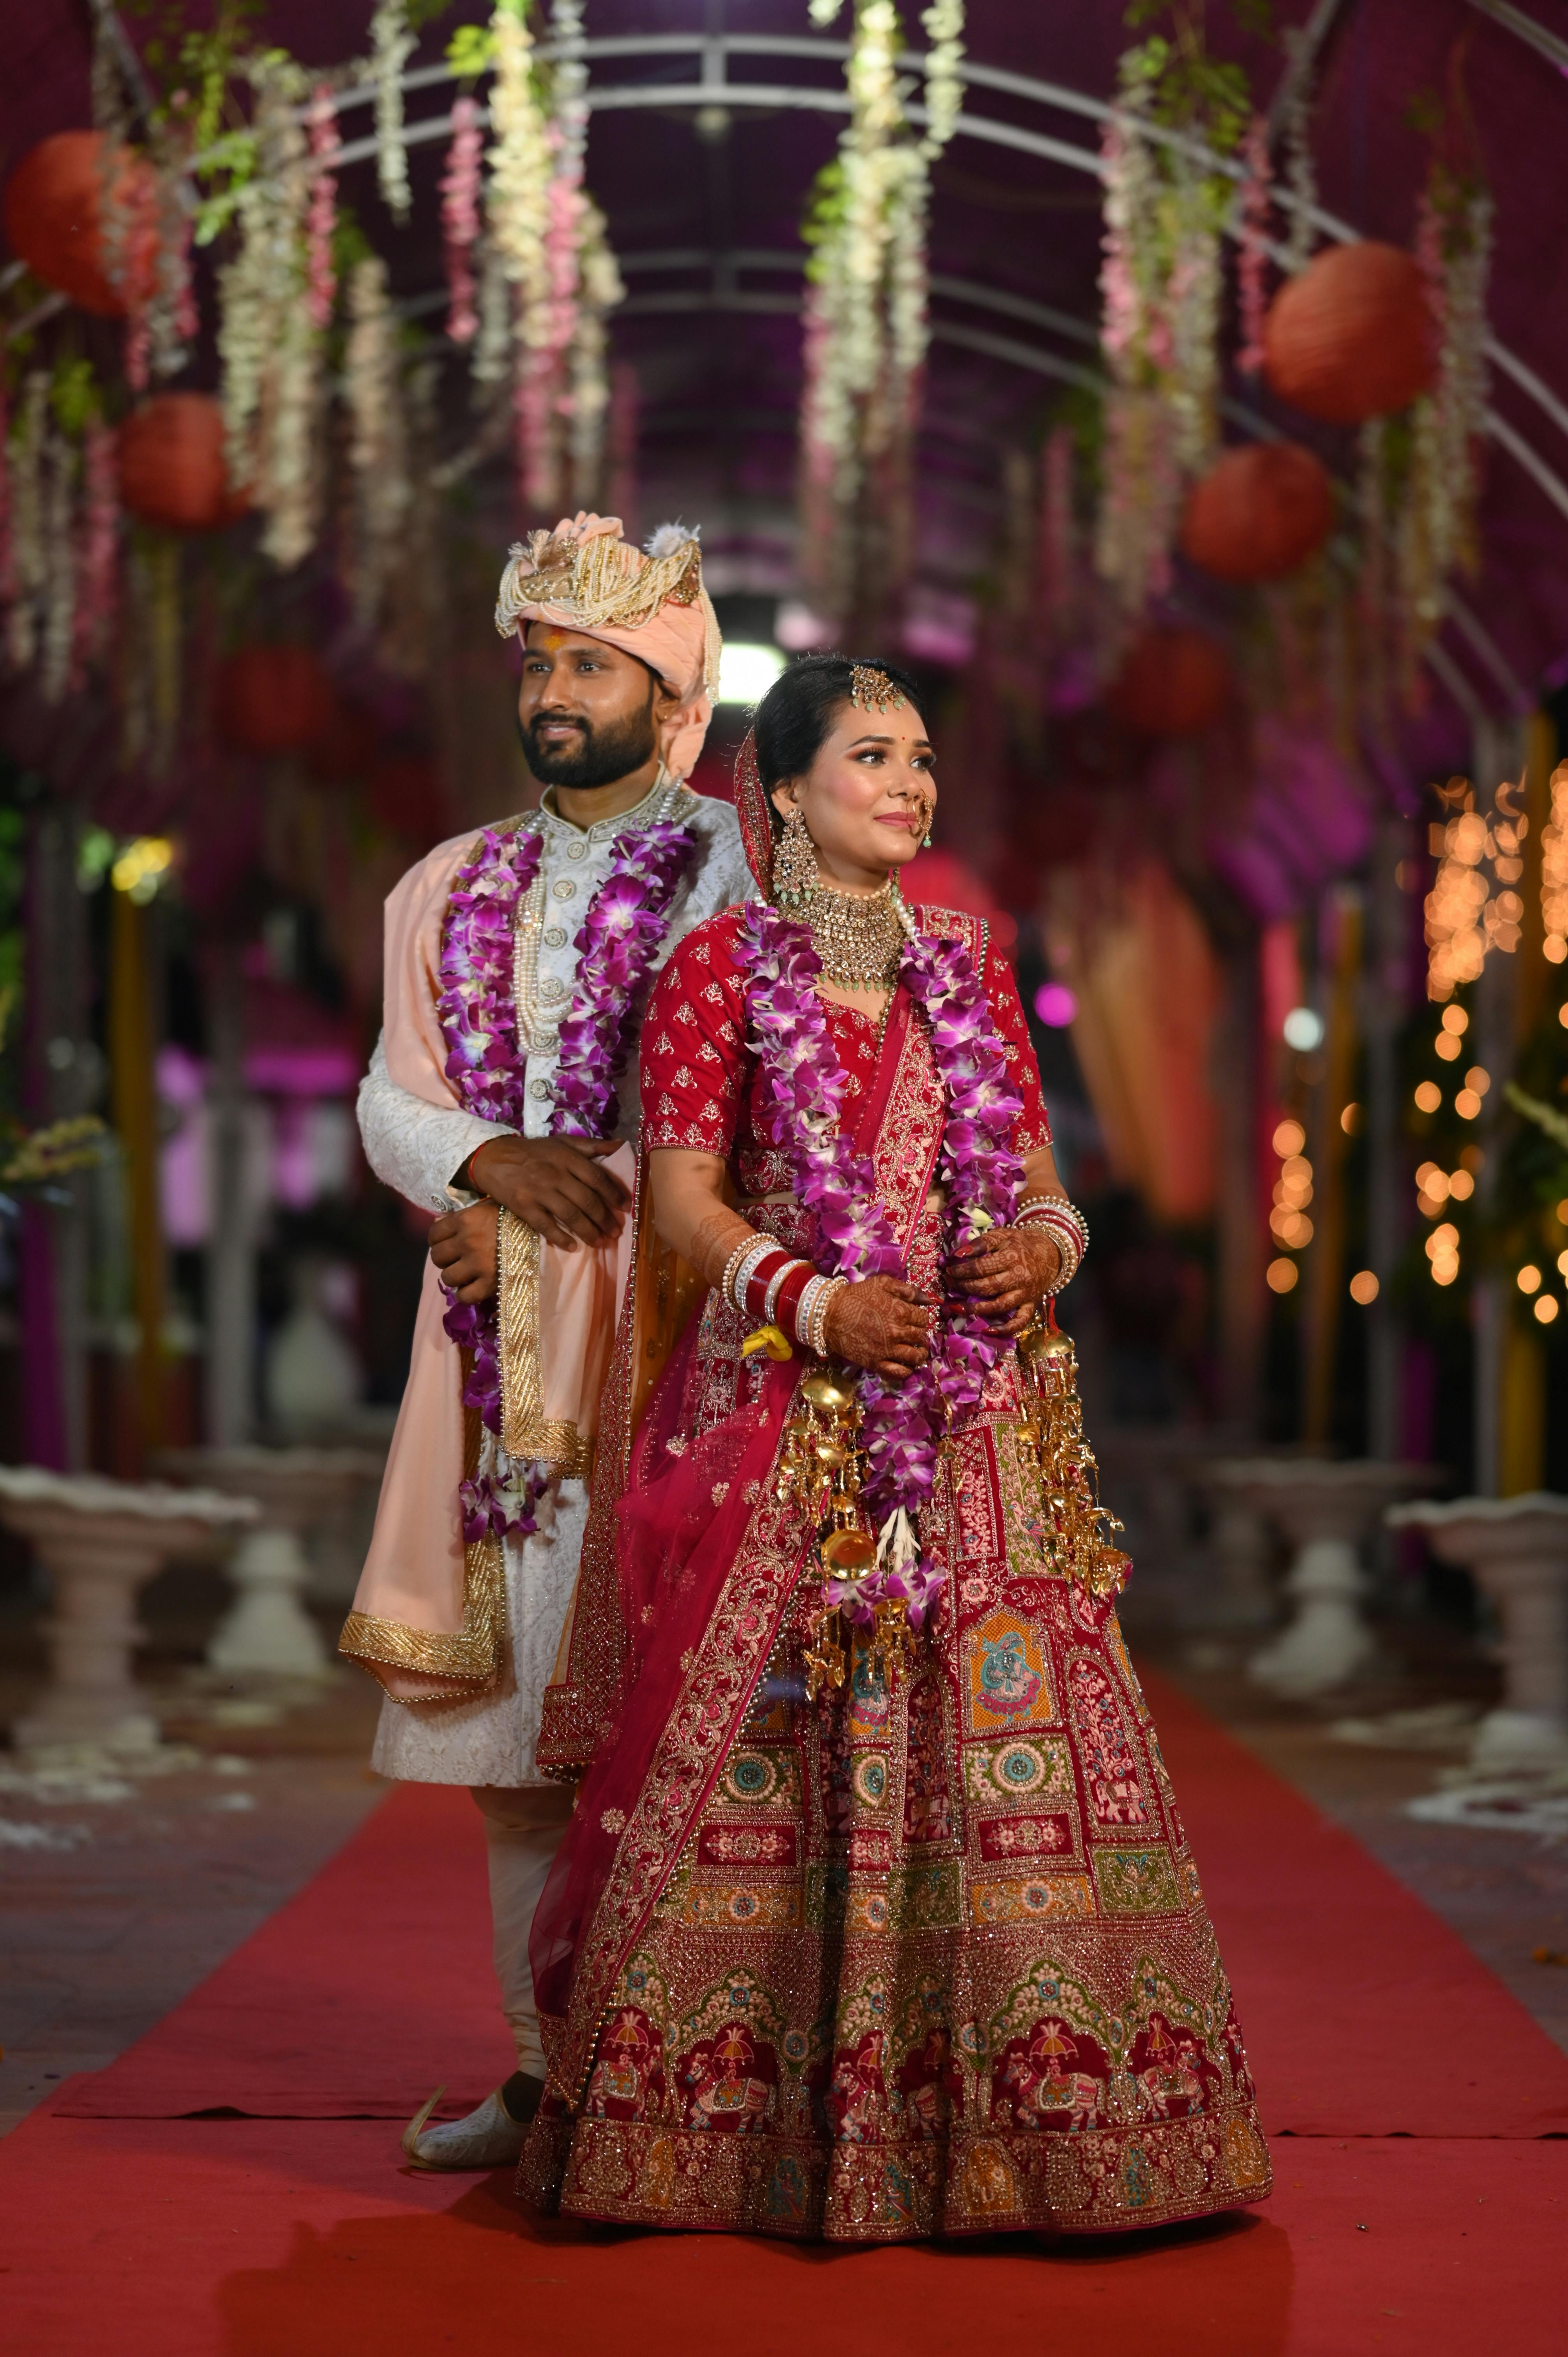 A Dreamy Wedding With The Bride In Unique Bridal Jewellery | Indian wedding  poses, Indian wedding couple photography, Indian bride photography poses